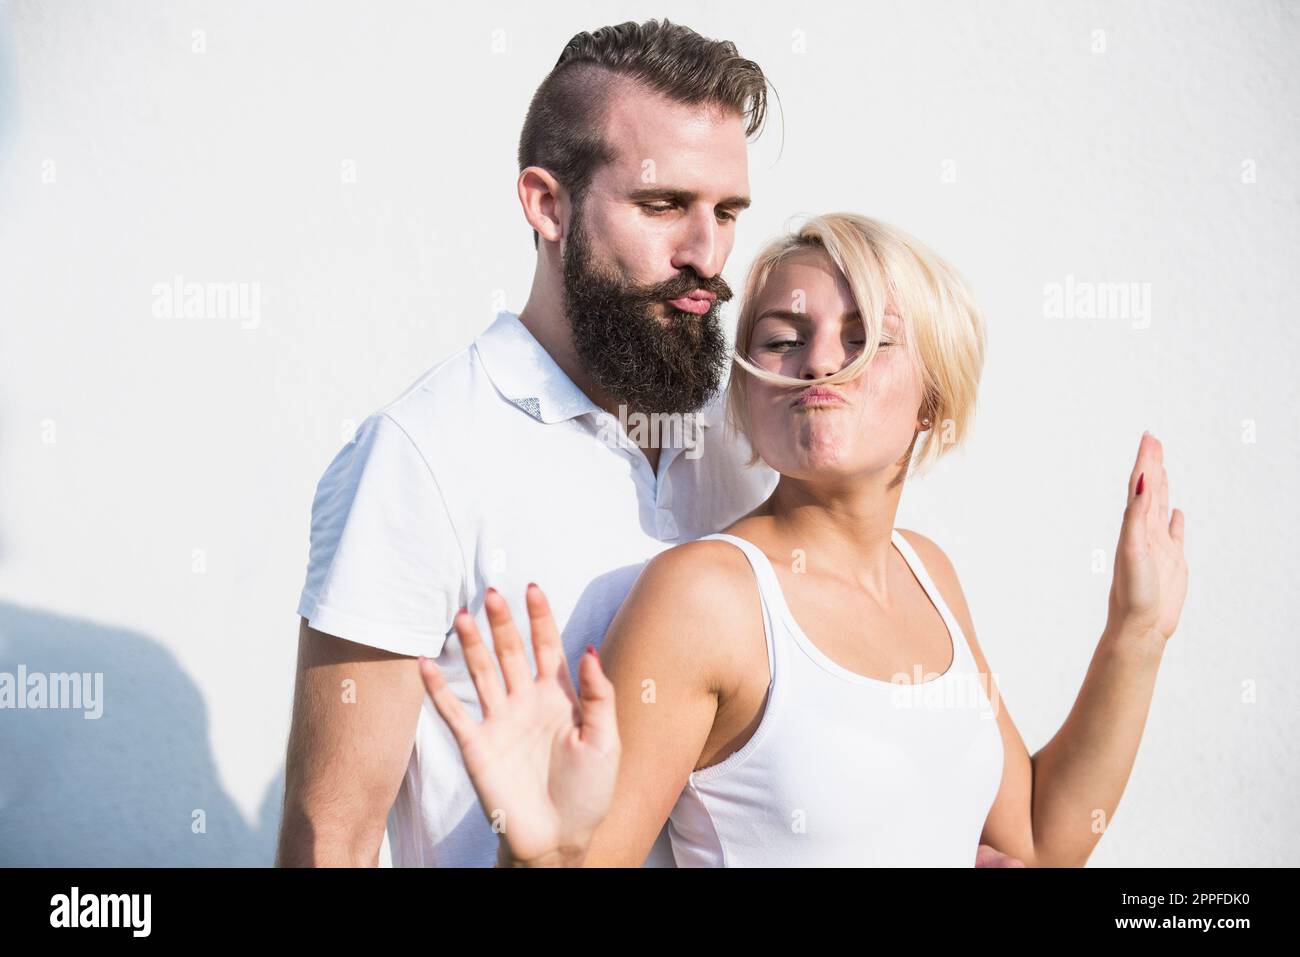 Jeune homme avec sa petite amie ludique faisant de la moustache avec les cheveux, Bavière, Allemagne Banque D'Images